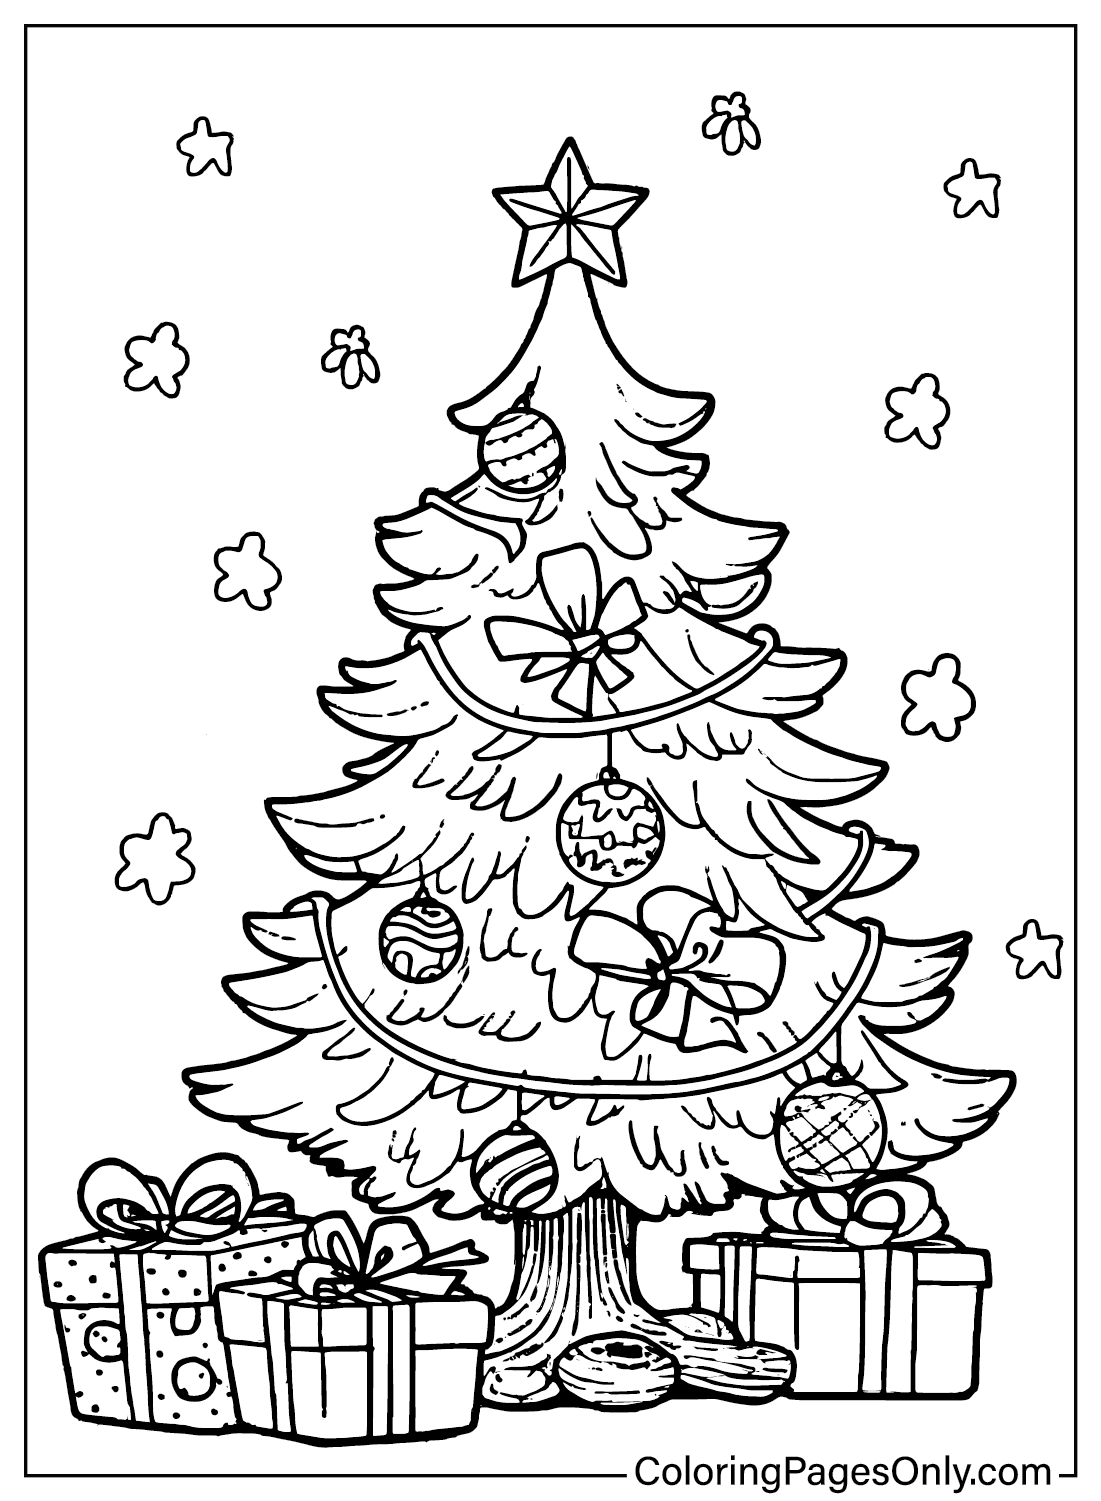 صفحات تلوين شجرة عيد الميلاد للطباعة من شجرة عيد الميلاد